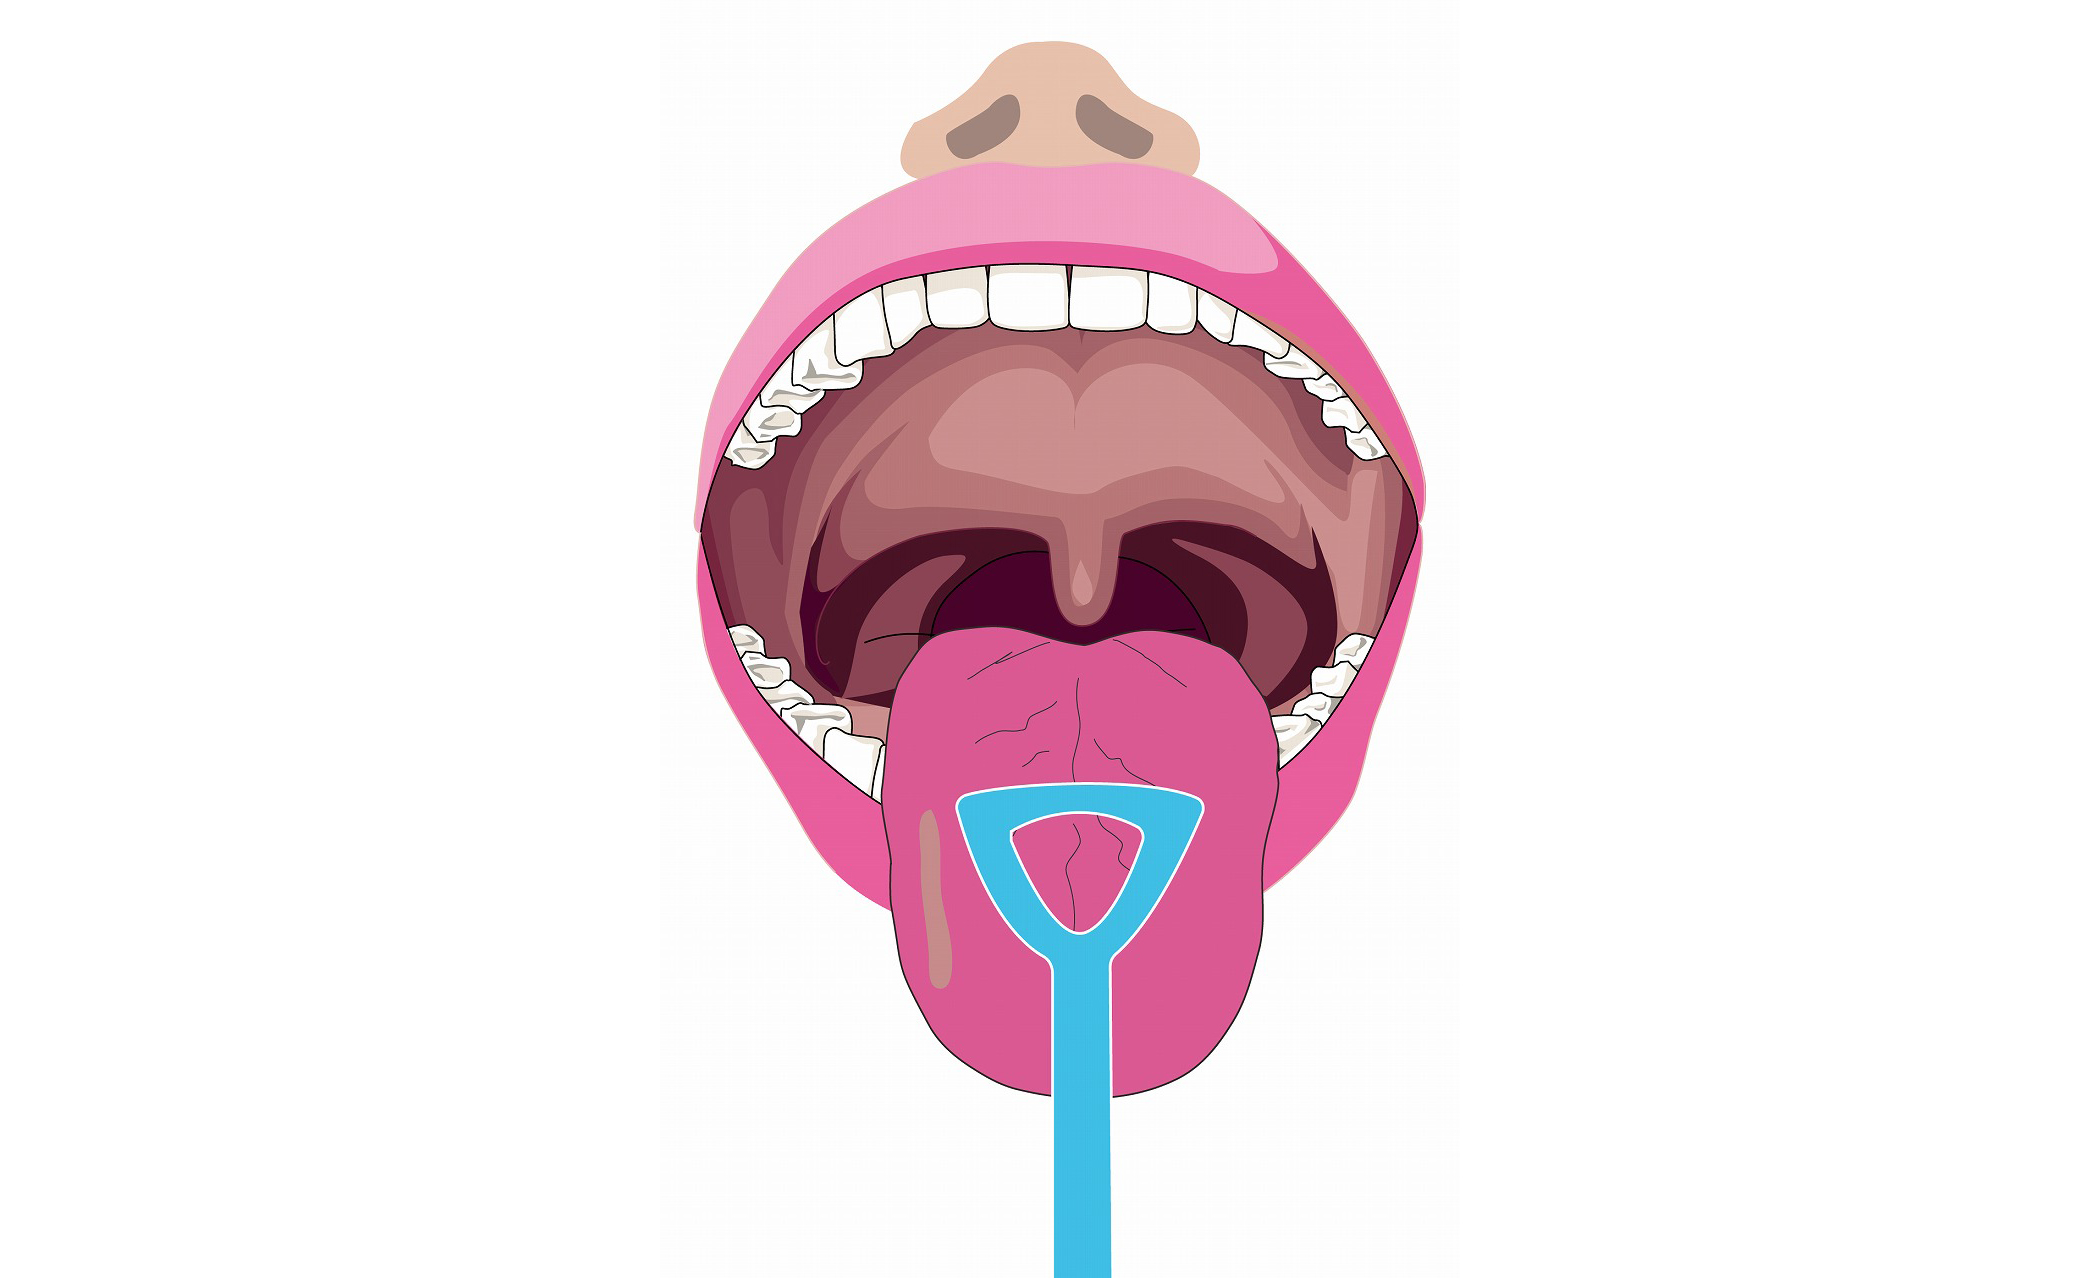 3.白い舌苔の取り方、対処法